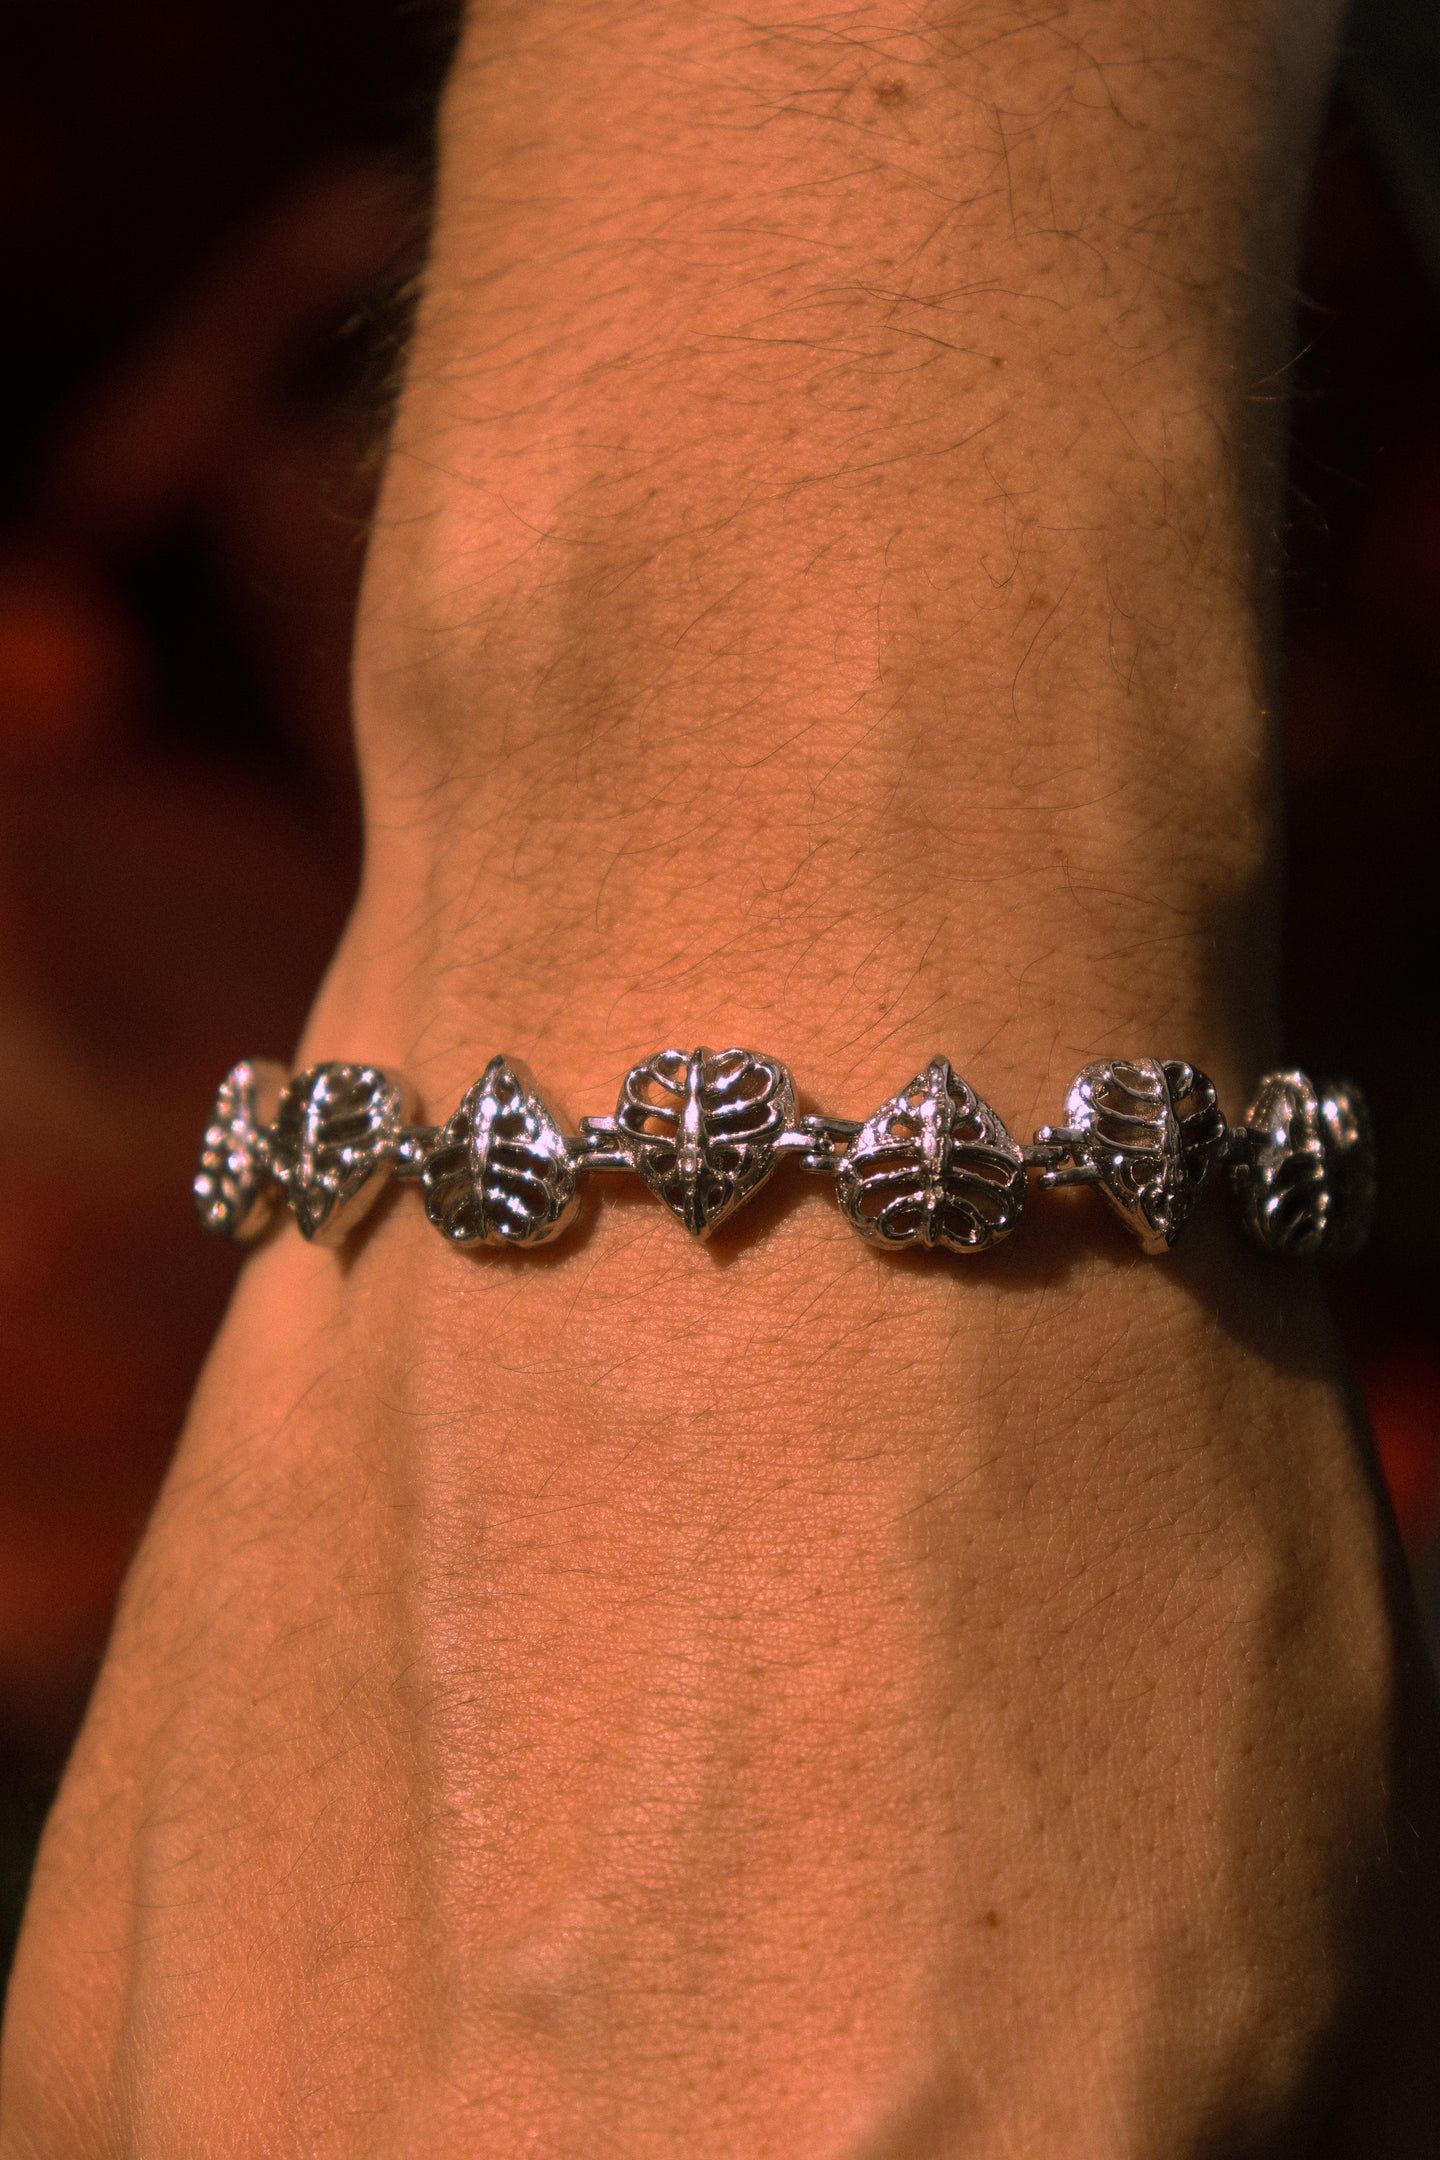 Love in Vain Bracelet - Fashion Jewelry by Yordy.